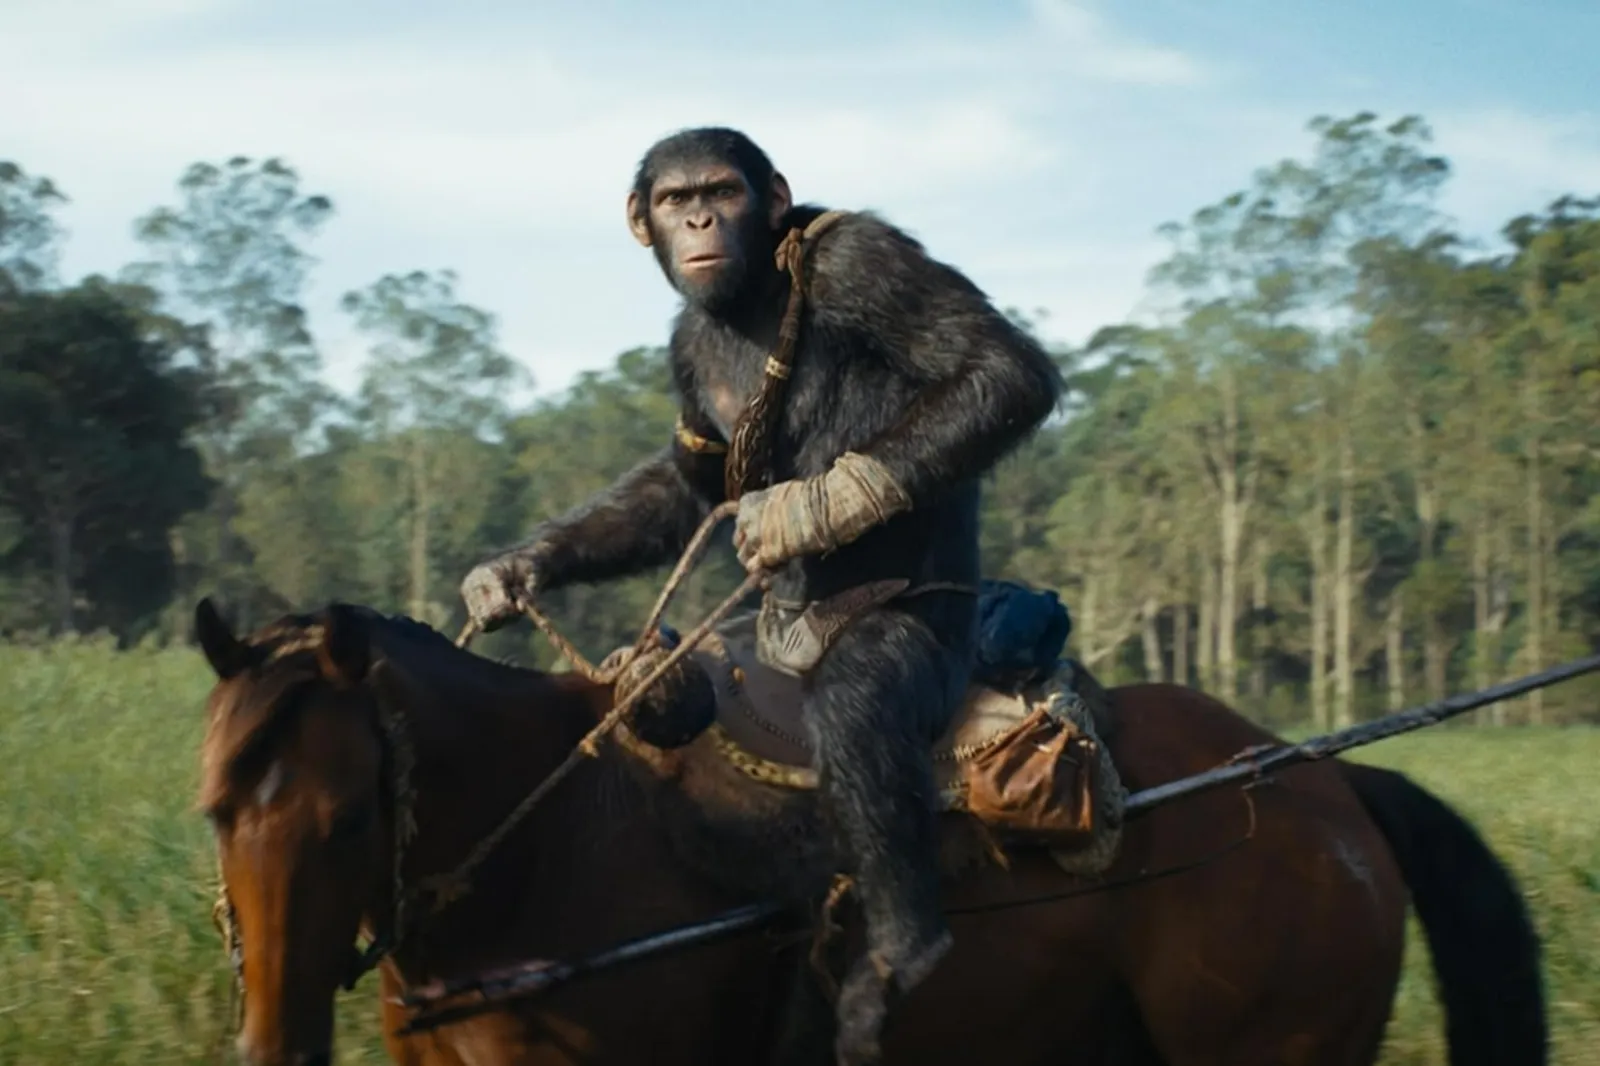 Deretan Fakta Menarik dari Film 'Kingdom of the Planet of the Apes'